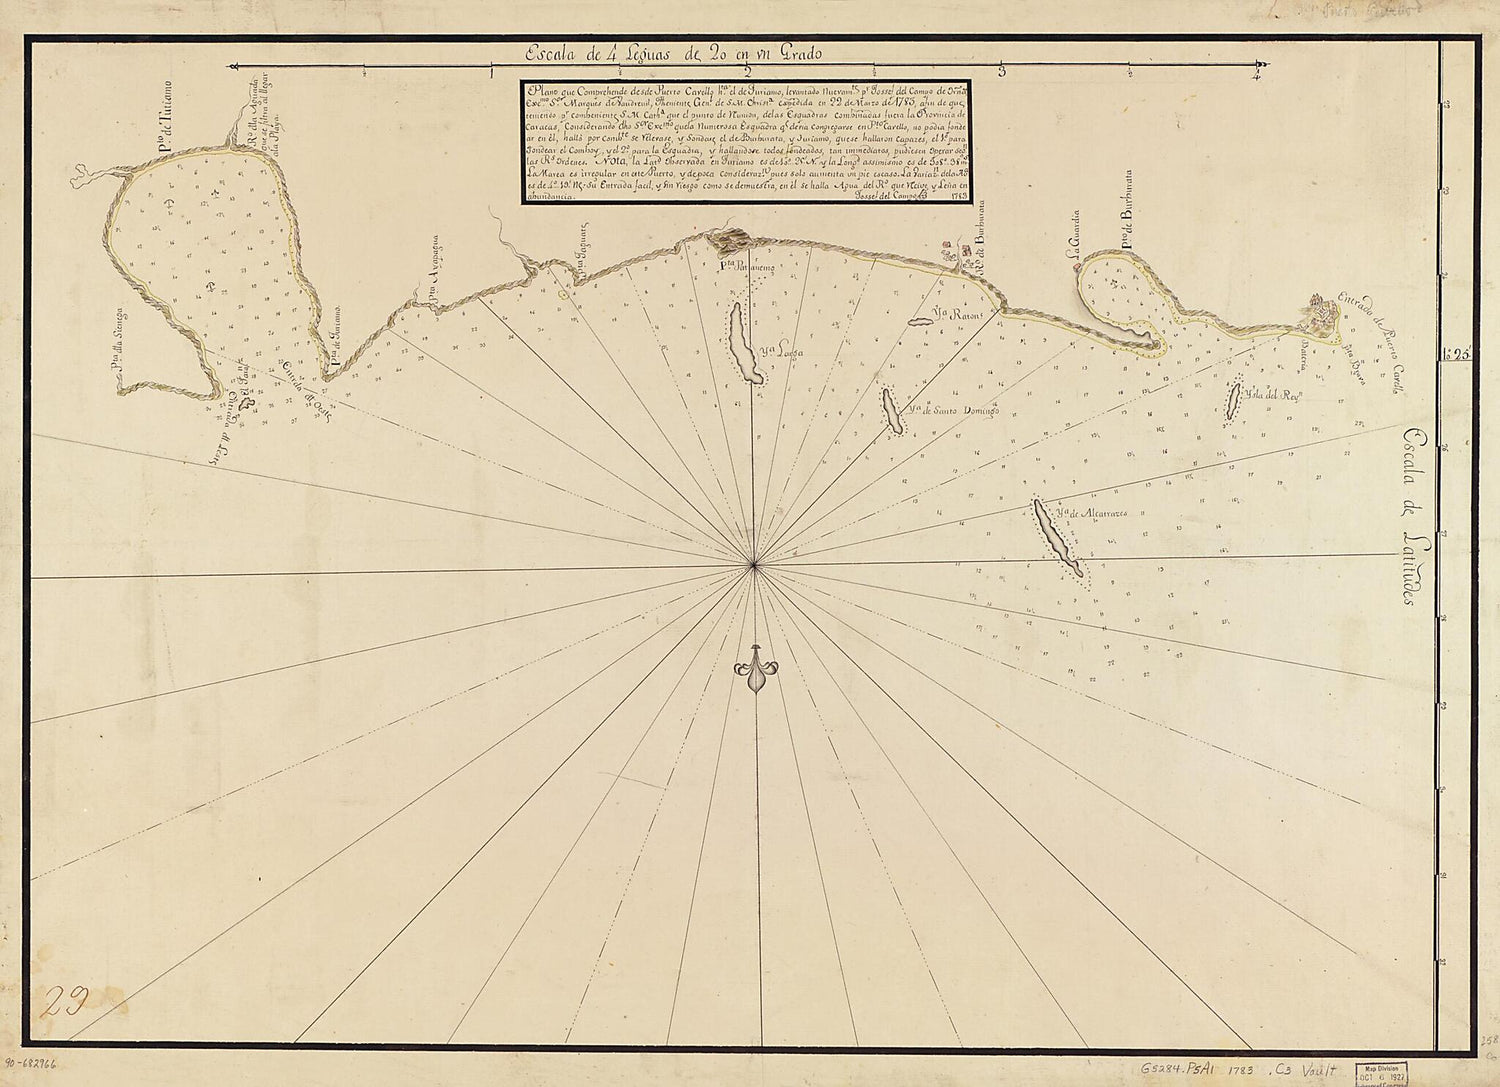 This old map of Plano Que Comprehende Desde Puerto Cavello Hta. El De Turiamo from 1783 was created by Josef Del Campo in 1783